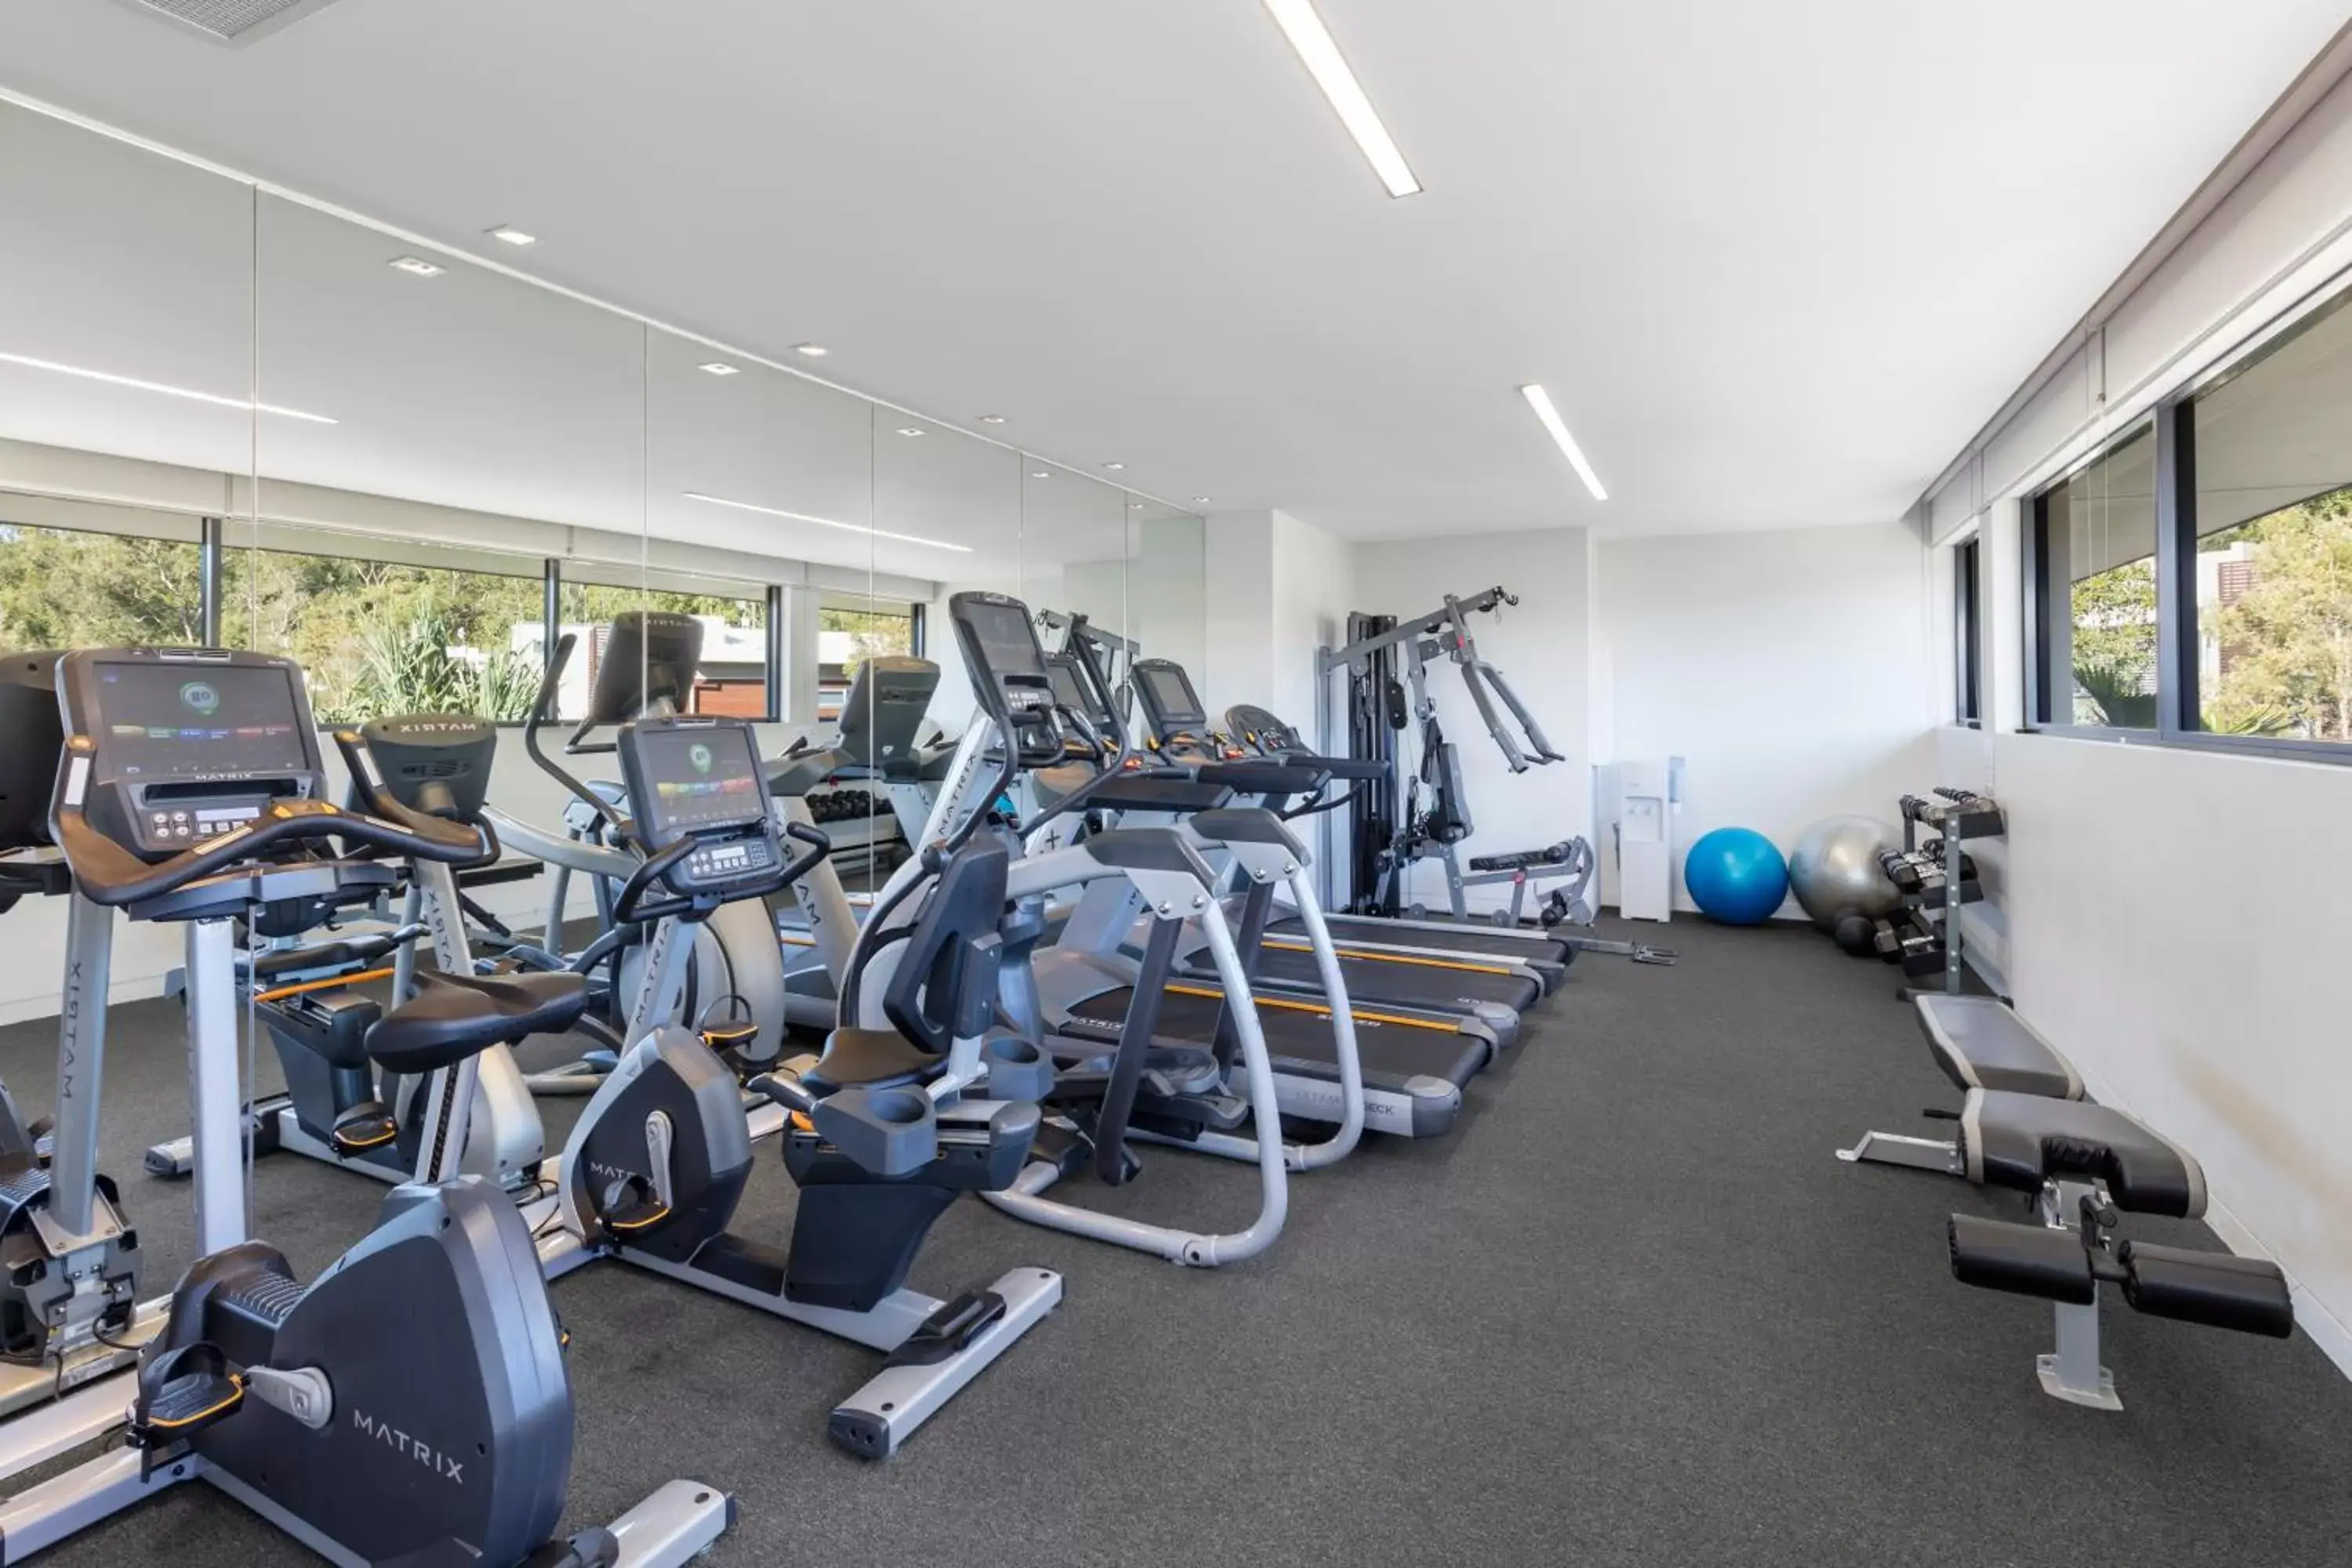 Fitness centre/facilities, Fitness Center/Facilities in RACV Noosa Resort